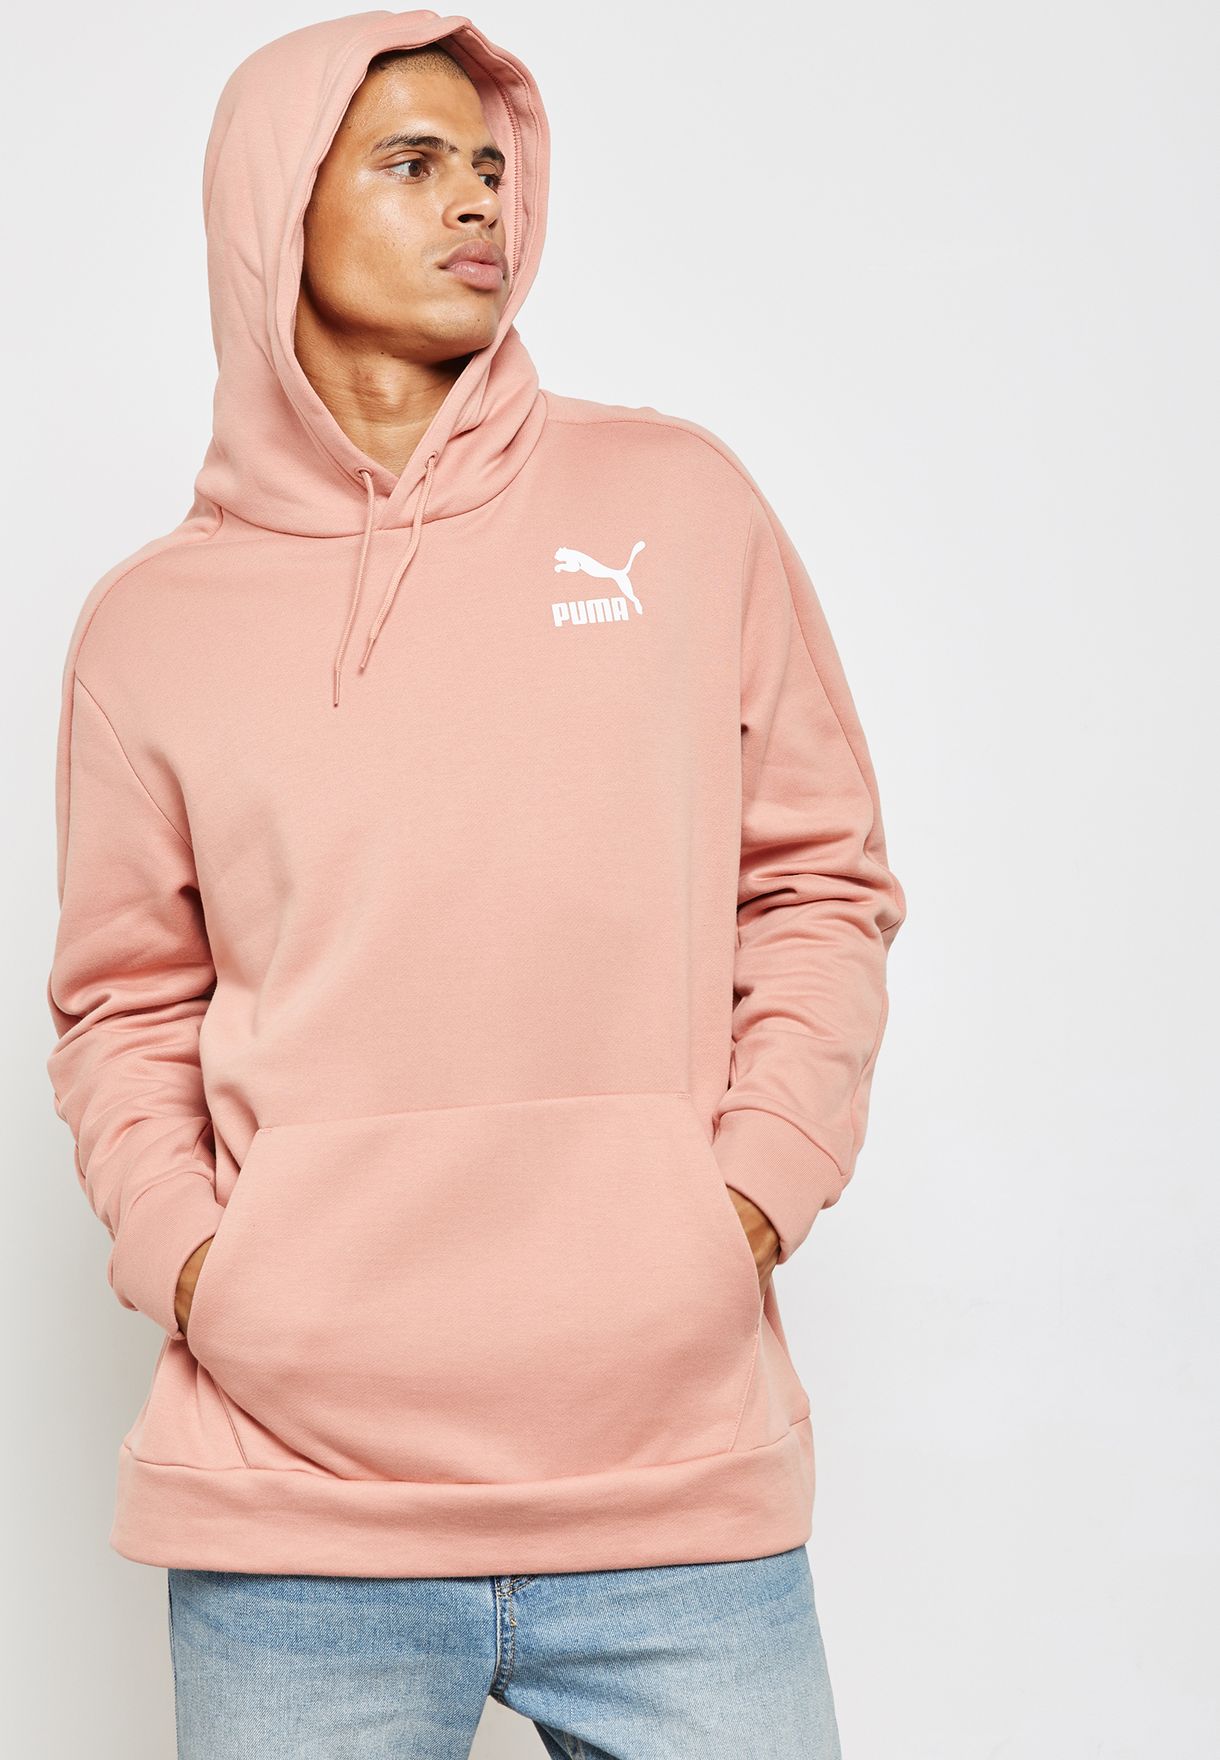 pink puma hoodie mens